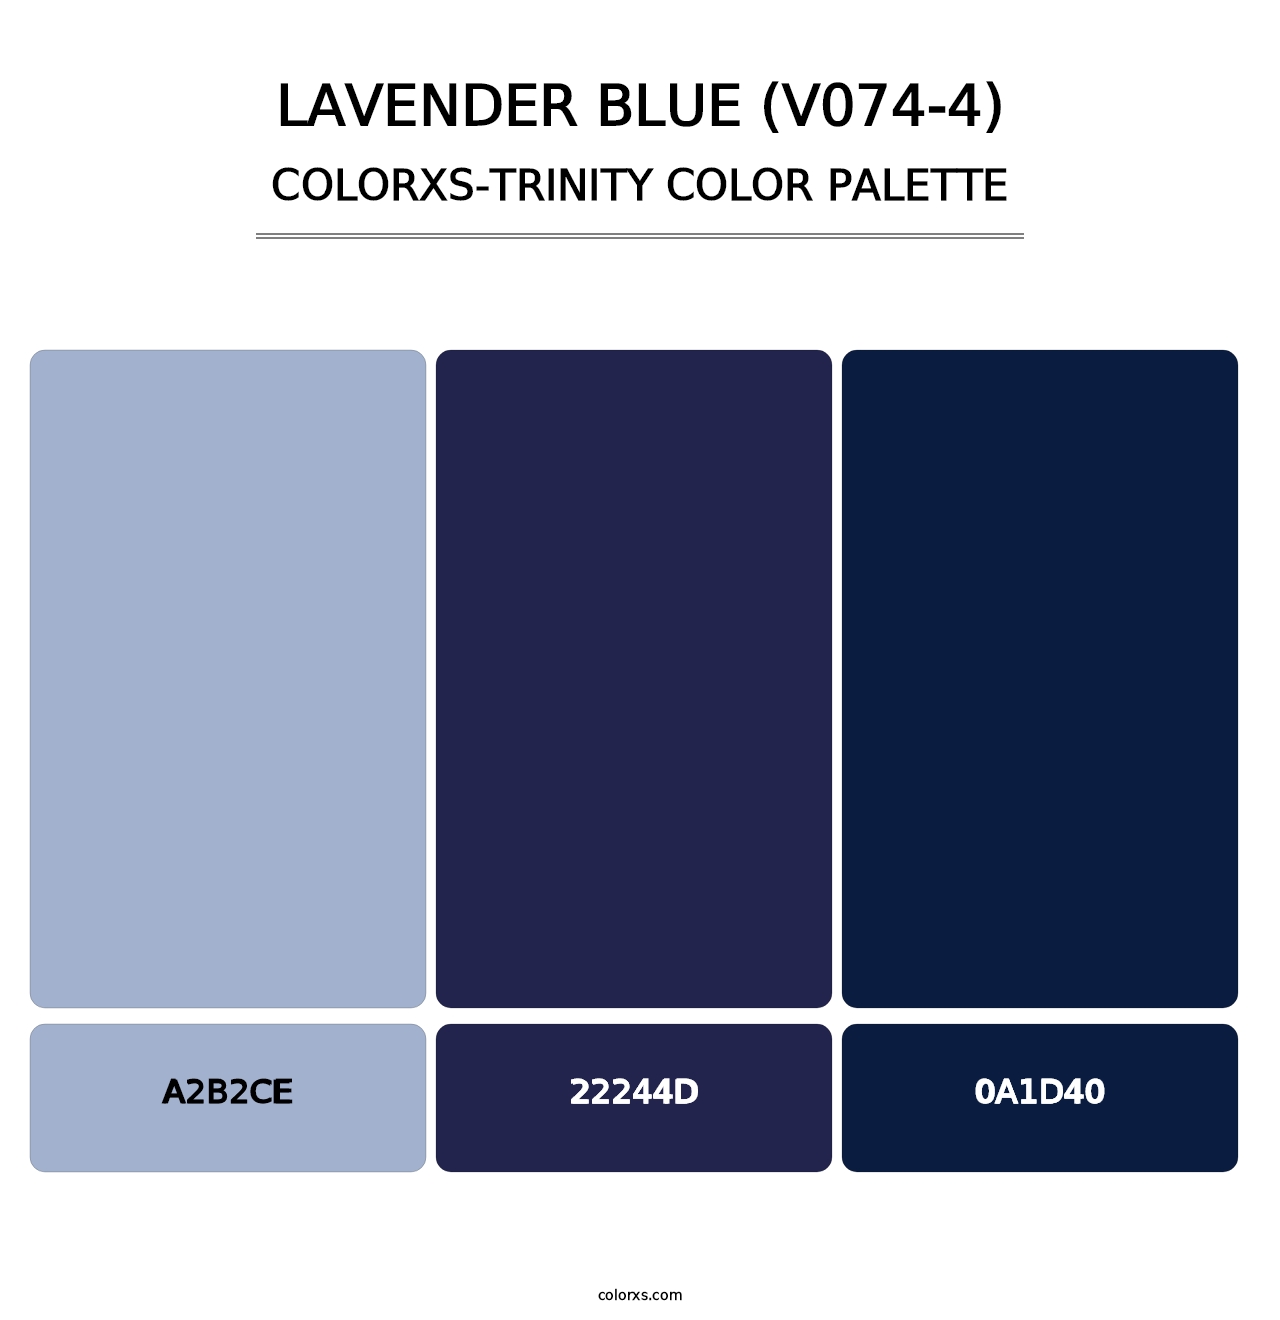 Lavender Blue (V074-4) - Colorxs Trinity Palette